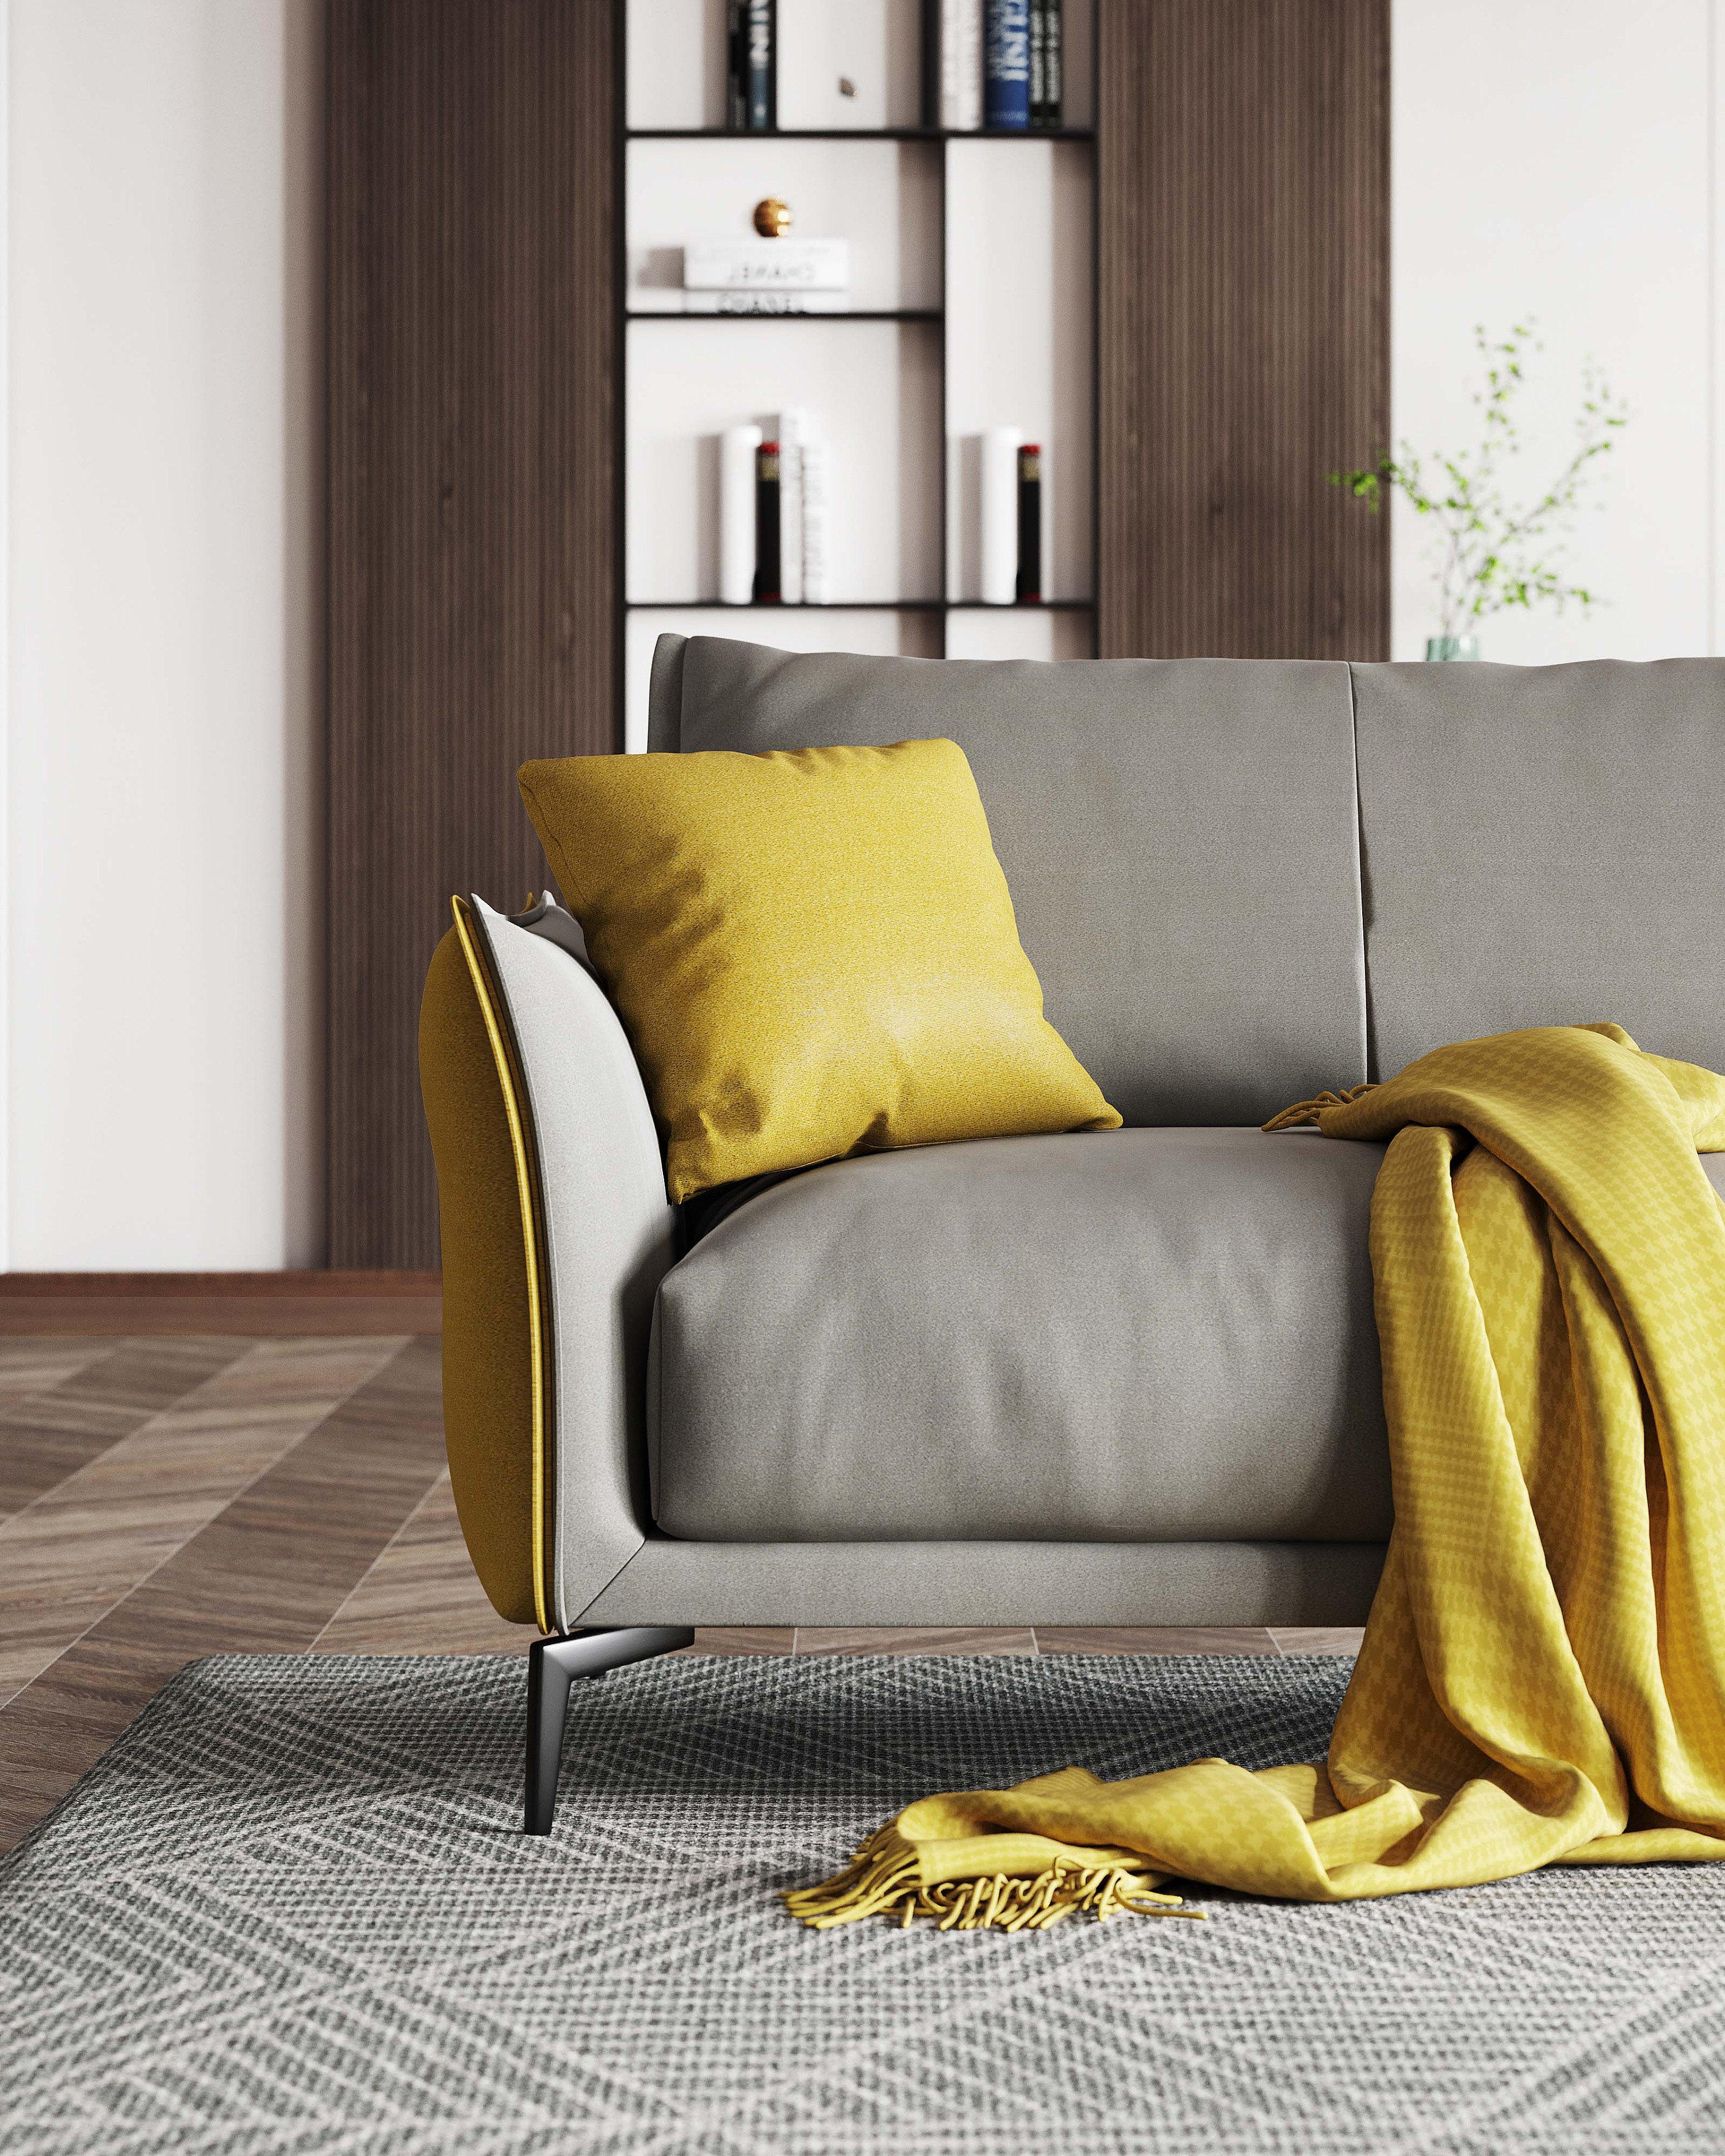 新作的一套科技布沙发清晰体现,质感强十分喜欢